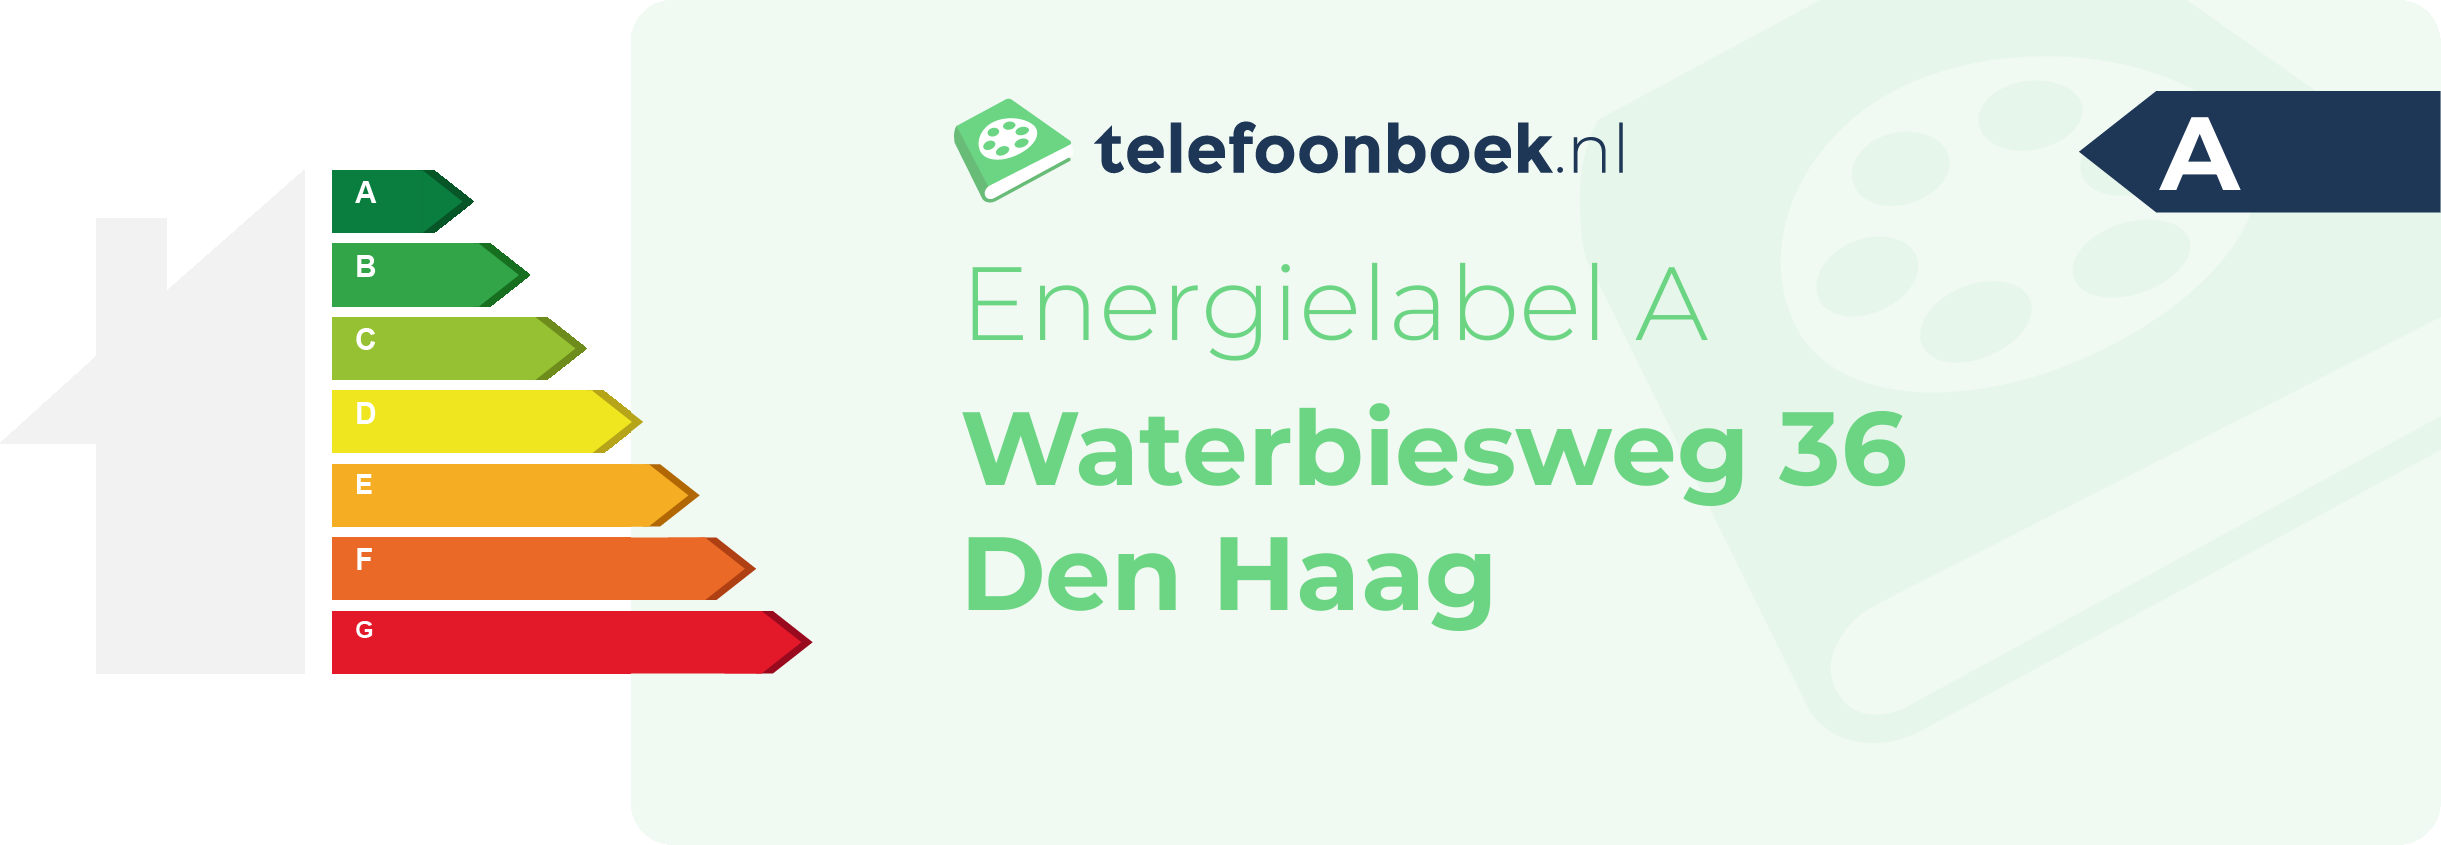 Energielabel Waterbiesweg 36 Den Haag